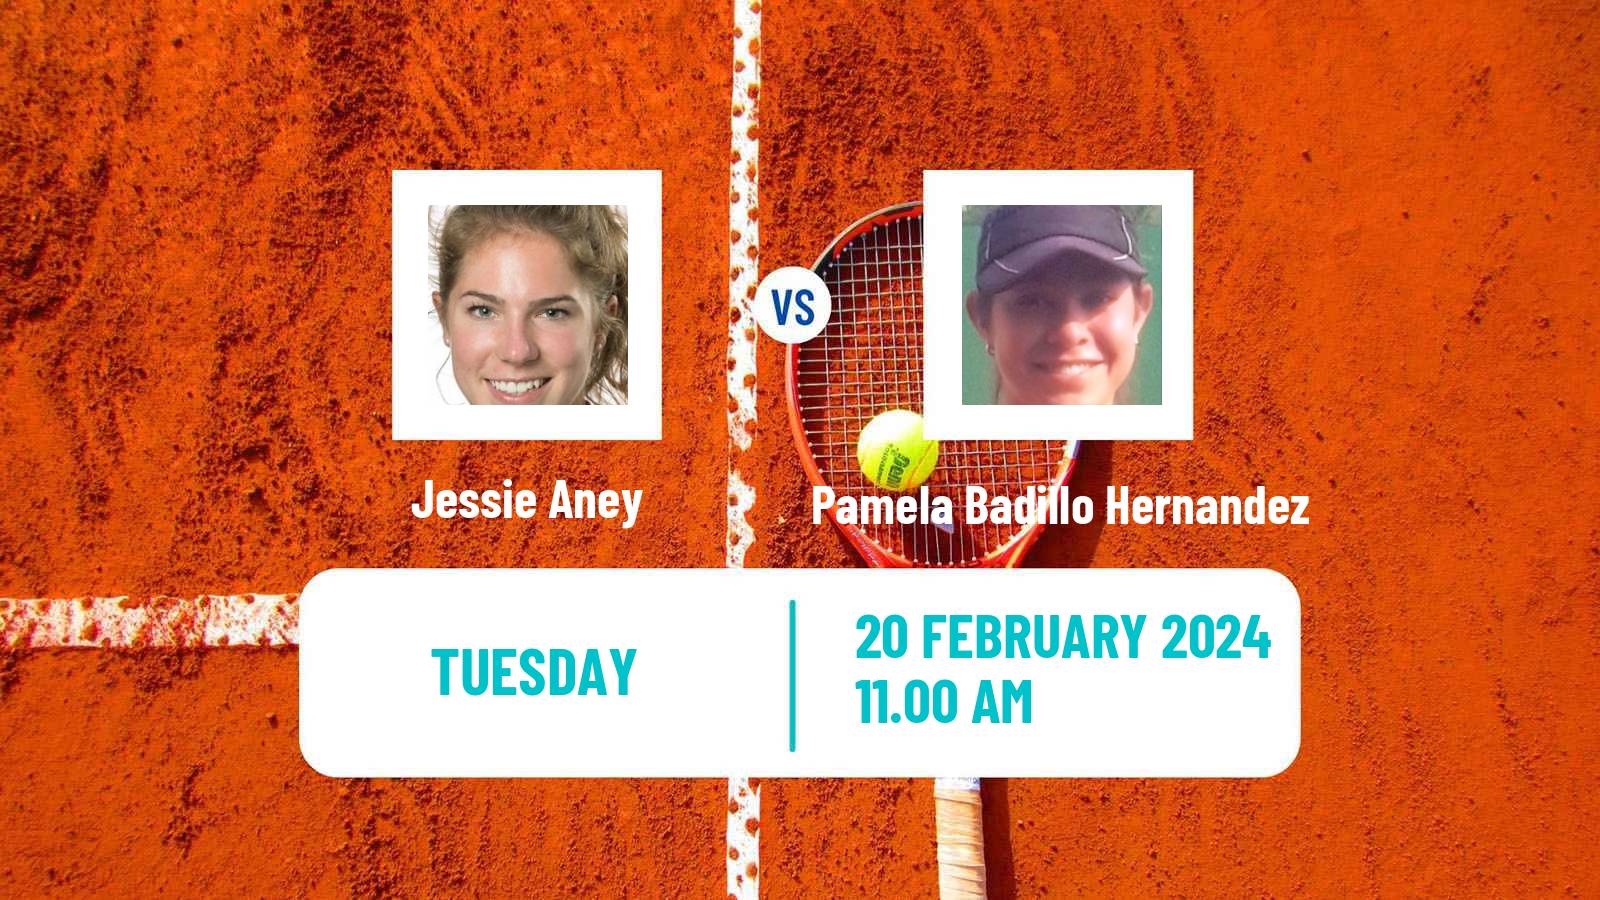 Tennis ITF W50 Mexico City Women Jessie Aney - Pamela Badillo Hernandez